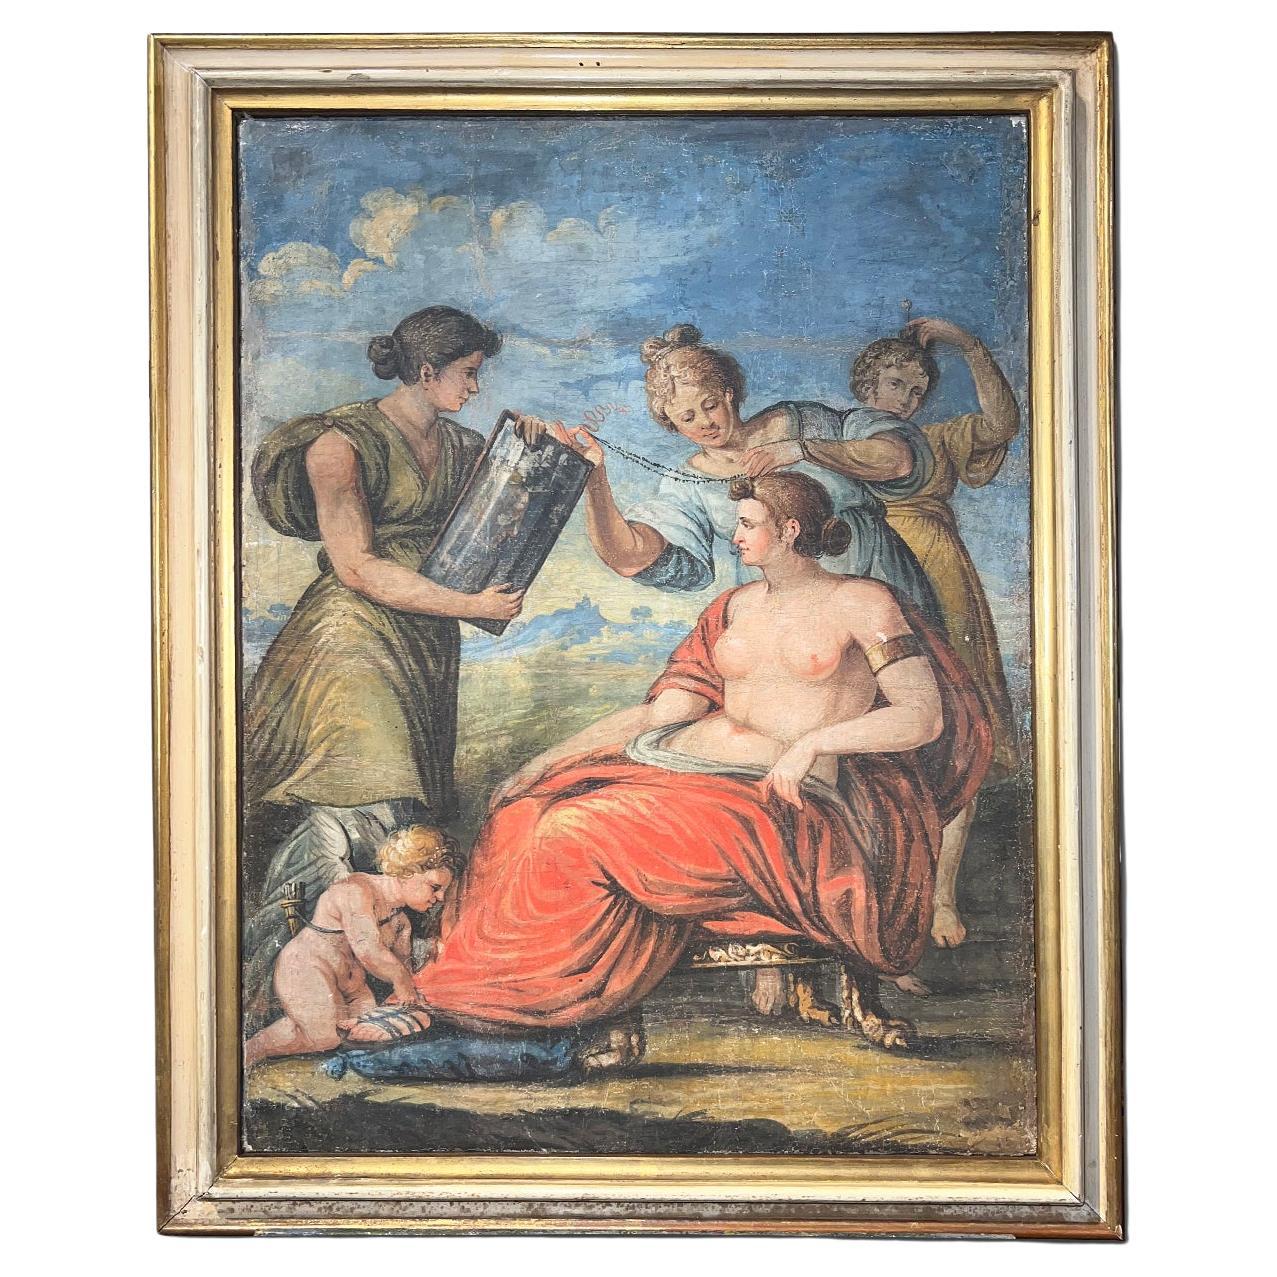 Finales del siglo XVIII, Baño de Venus, Témpera sobre lienzo